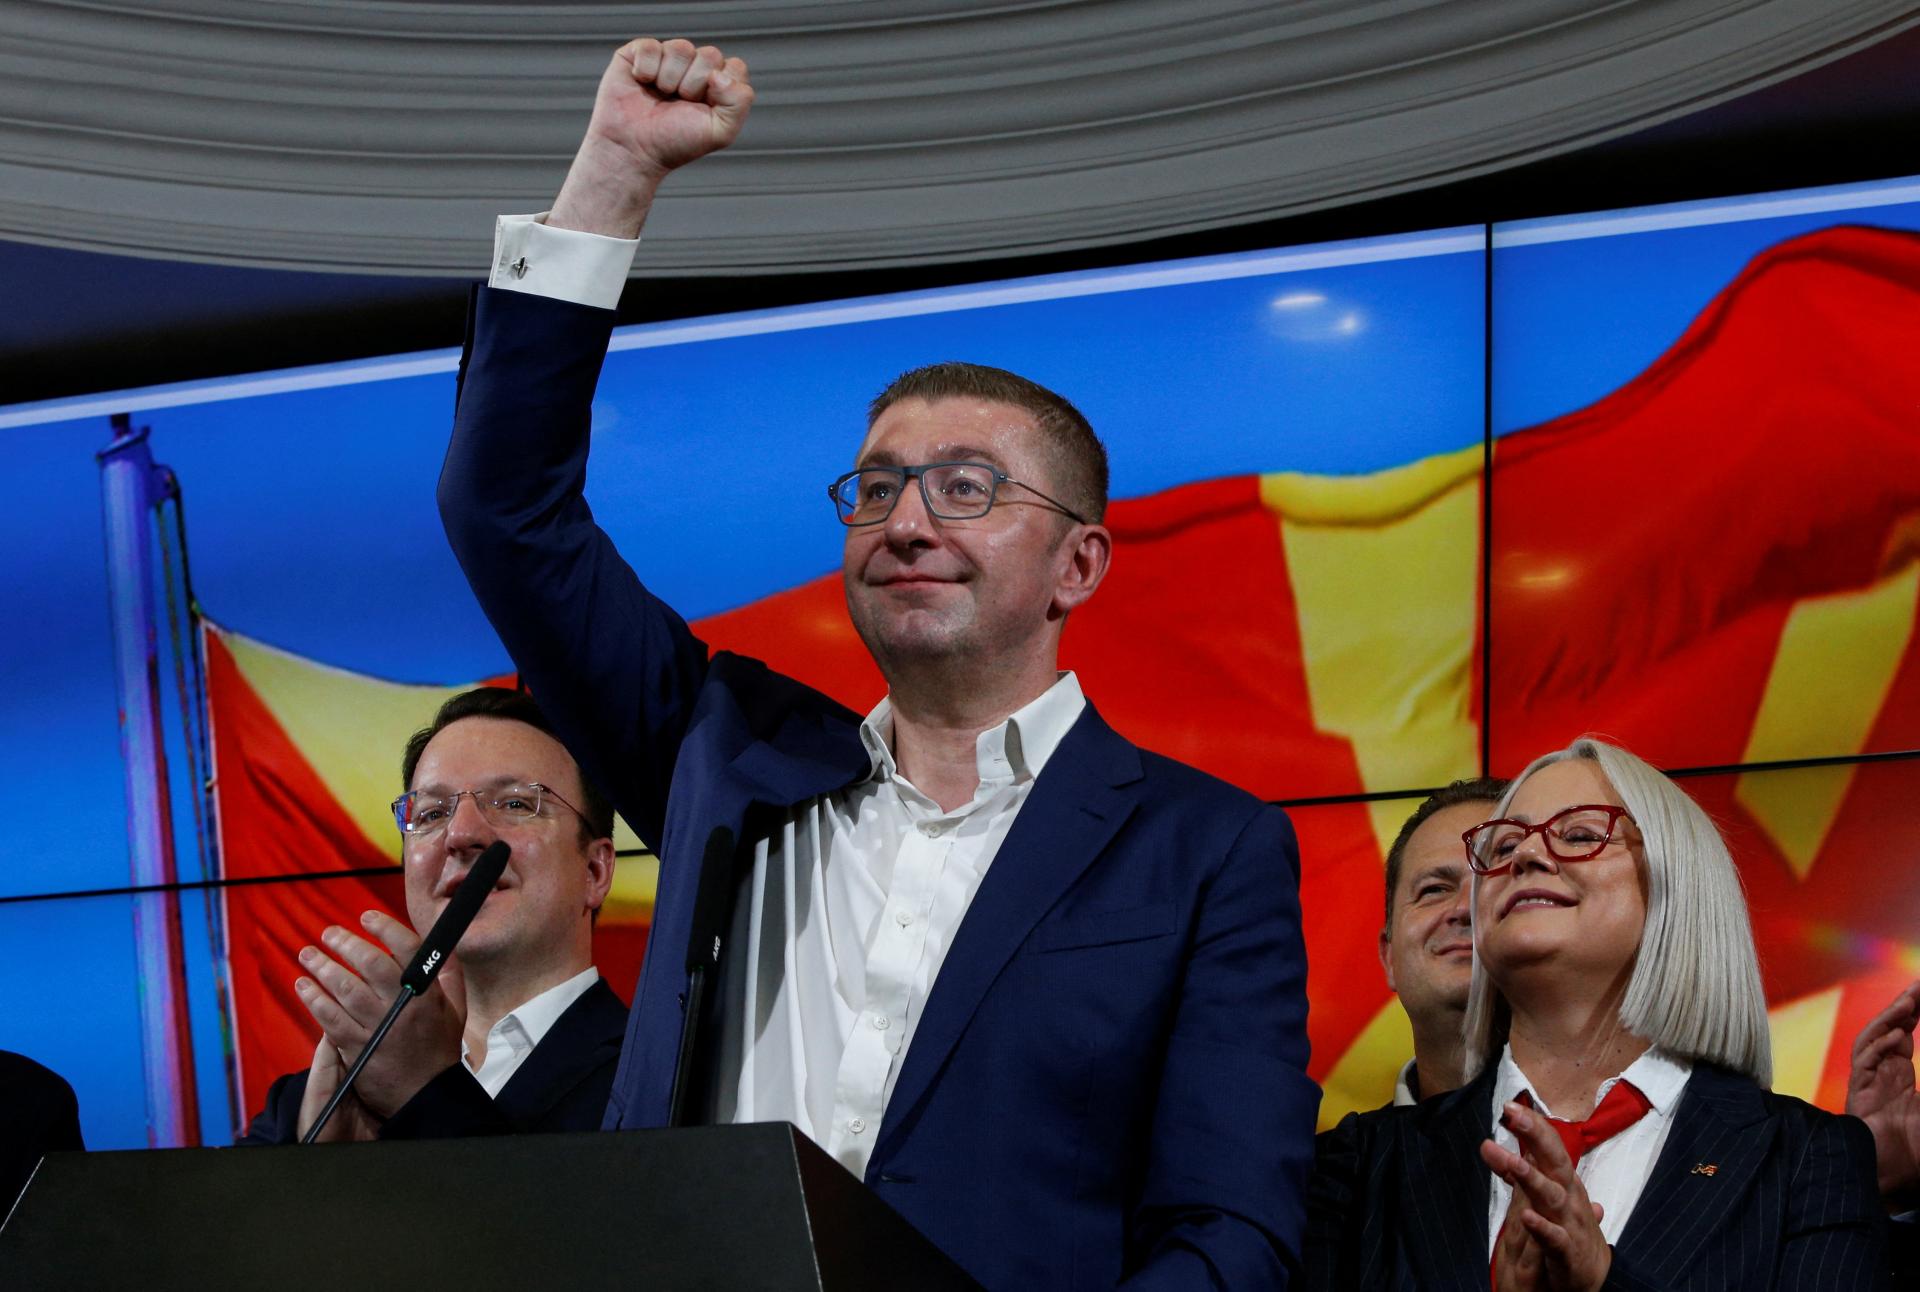 Pravicová opozícia v Severnom Macedónsku vyhrala voľby s výrazným náskokom